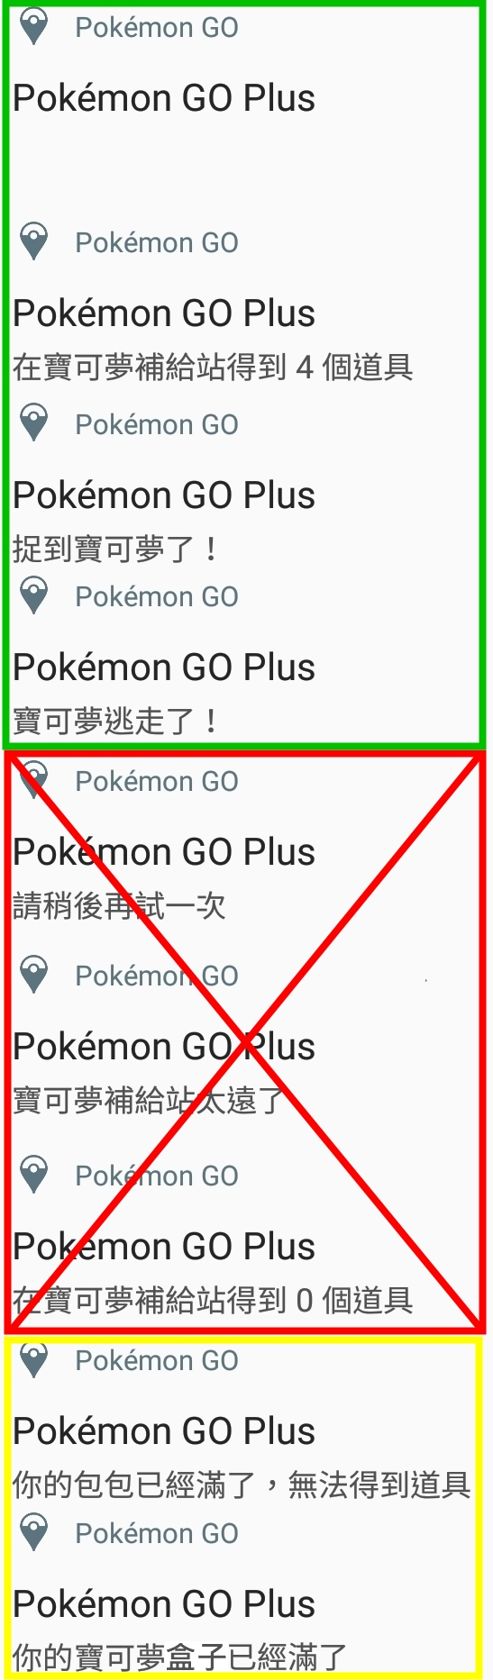 情報 垢普拉斯pokemon Go Plus助手app For Android Pokemon Go 哈啦板 巴哈姆特